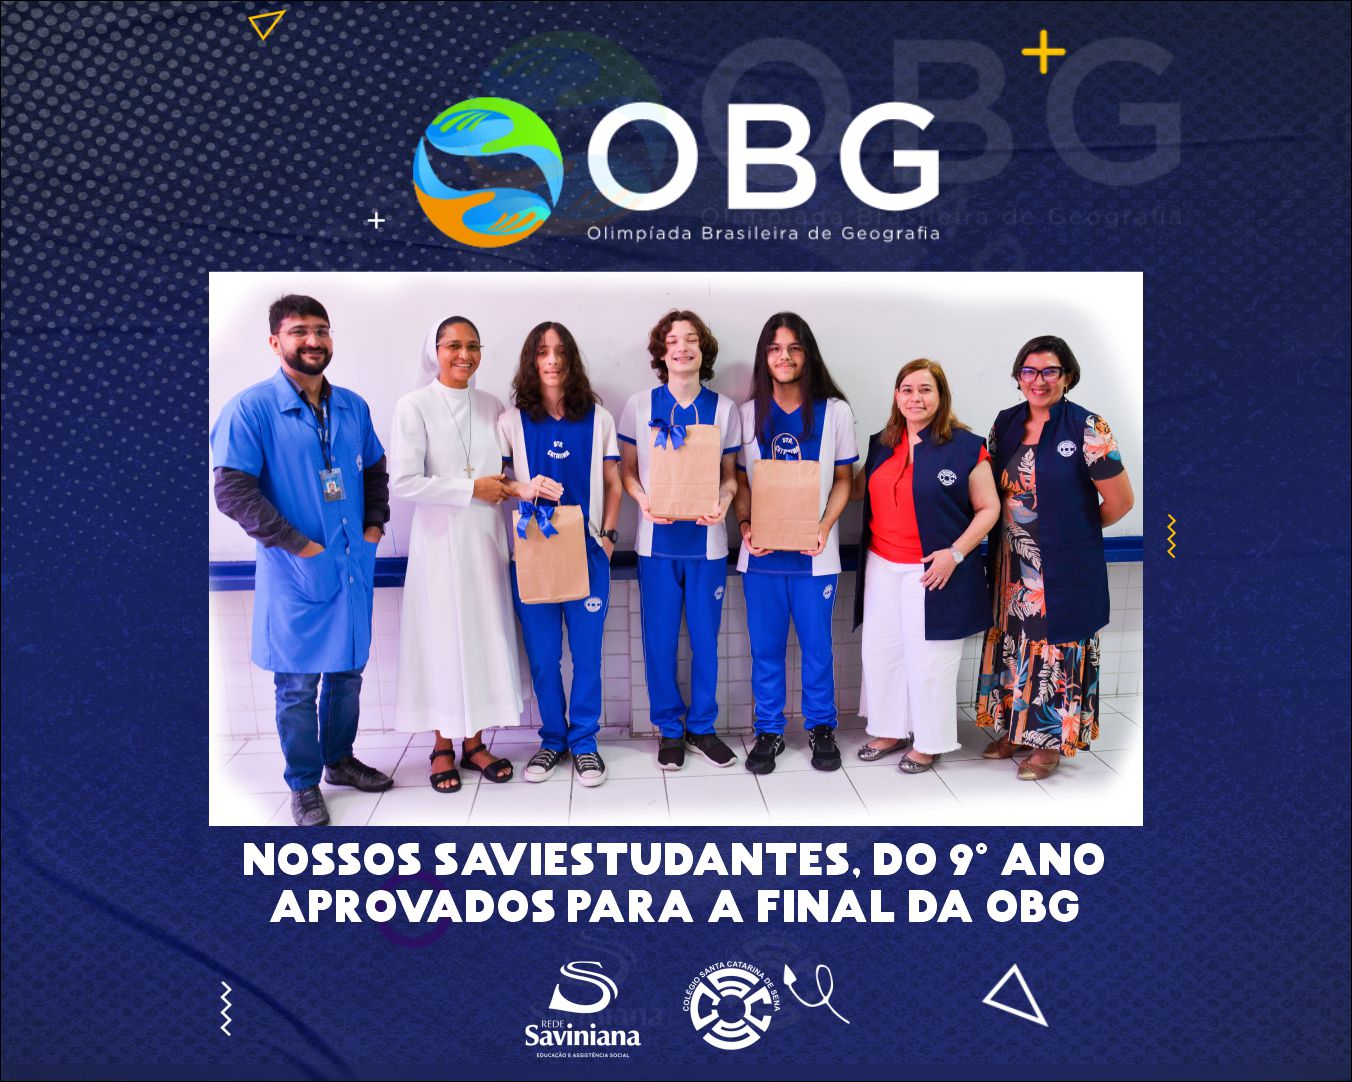 OBG - Olimpíada Brasileira de Geografia